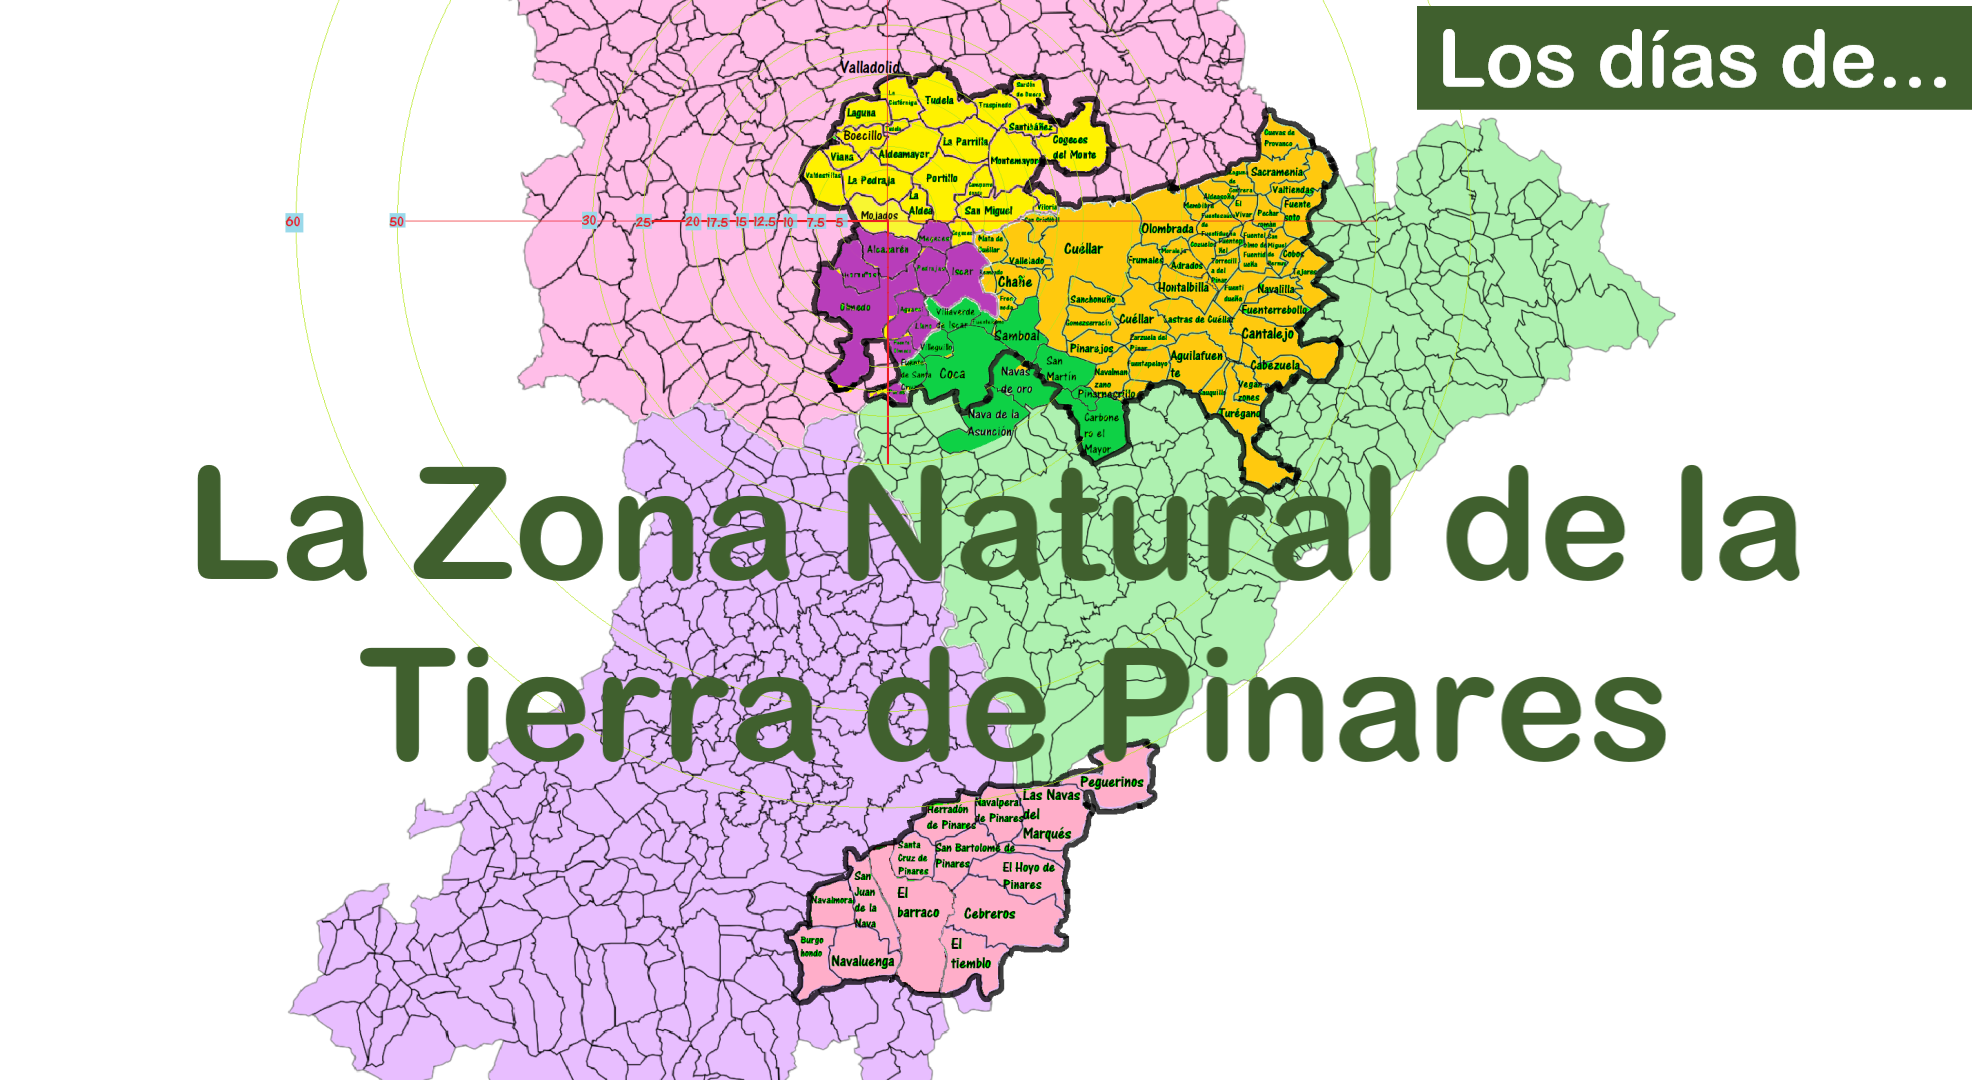 Tierra de Pinares